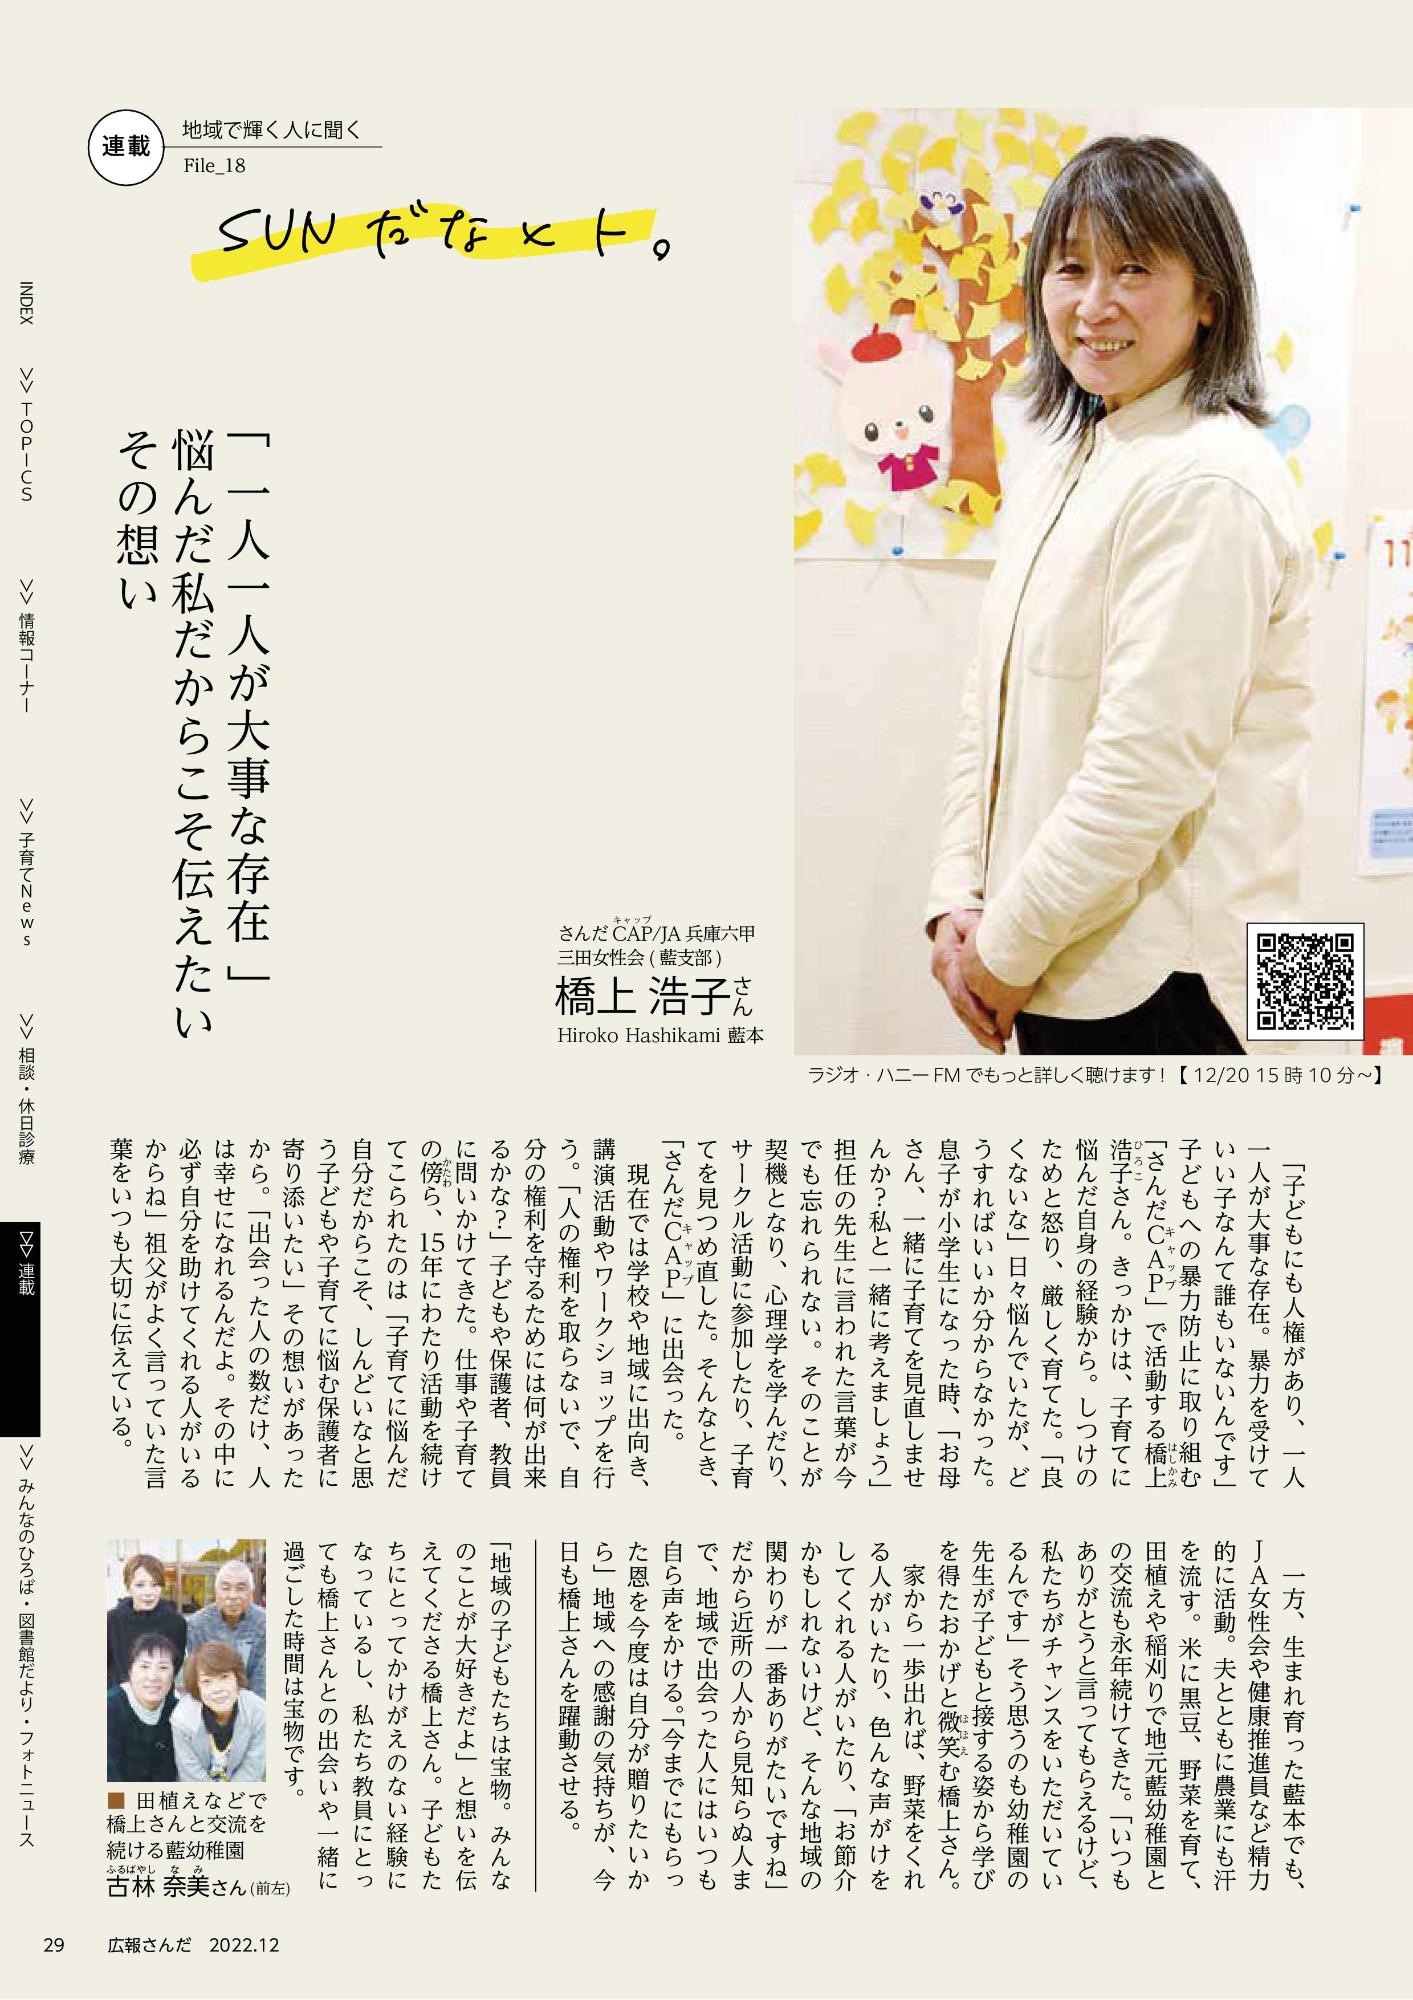 特定非営利活動法人 みかづき 理事長の谷生 禎章さんの写真が掲載された広報さんだ10月号のSUNだなヒト。コーナーのスクリーンショット